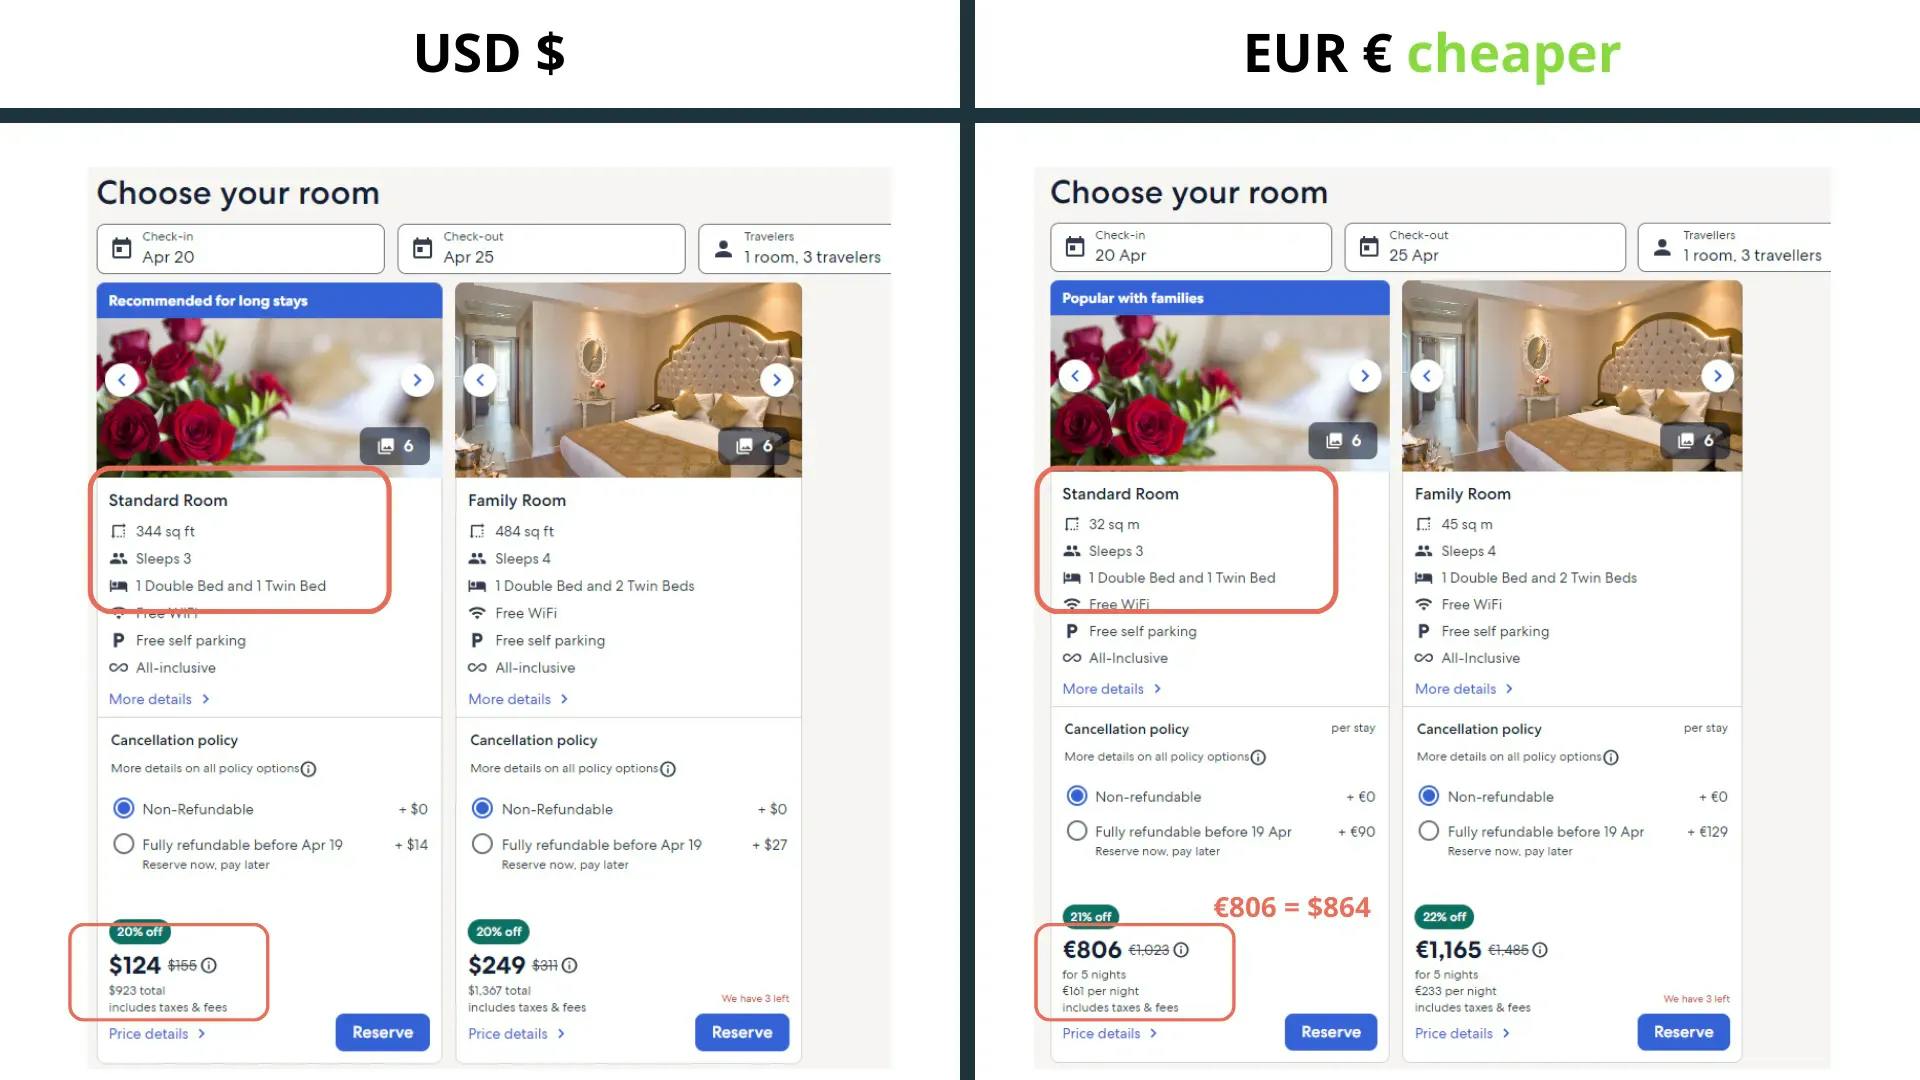 Liste der manipulativen Marketing-Tricks, mit denen Booking.com und andere Hotelbuchungsseiten ihre Kunden täuschen [mit Beispielen] - price difference